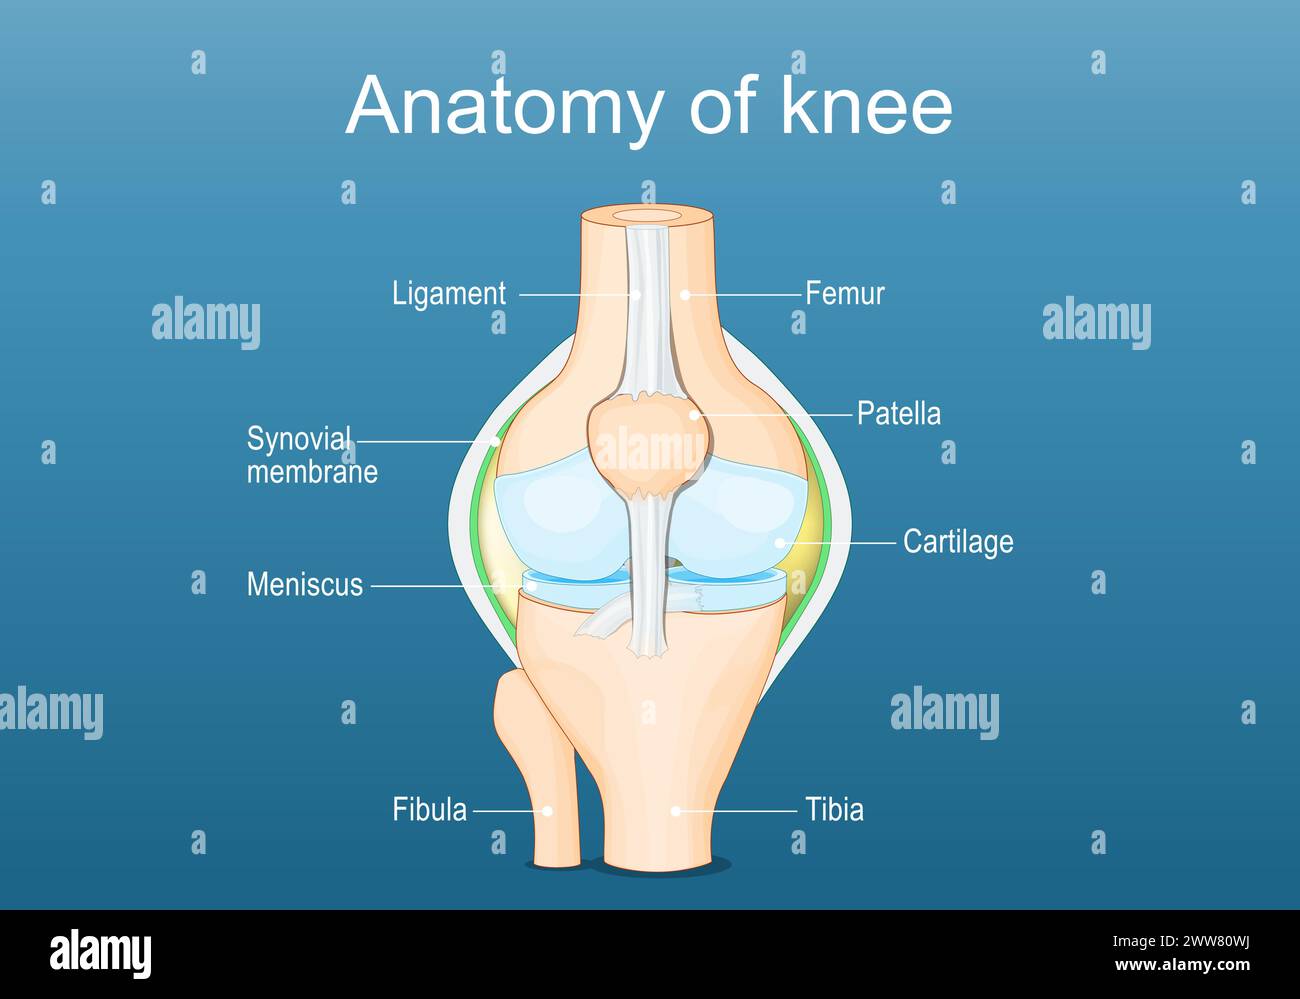 Anatomía de la articulación de la rodilla. Etiquetado de todos los huesos. Ilustración vectorial plana isométrica Ilustración del Vector